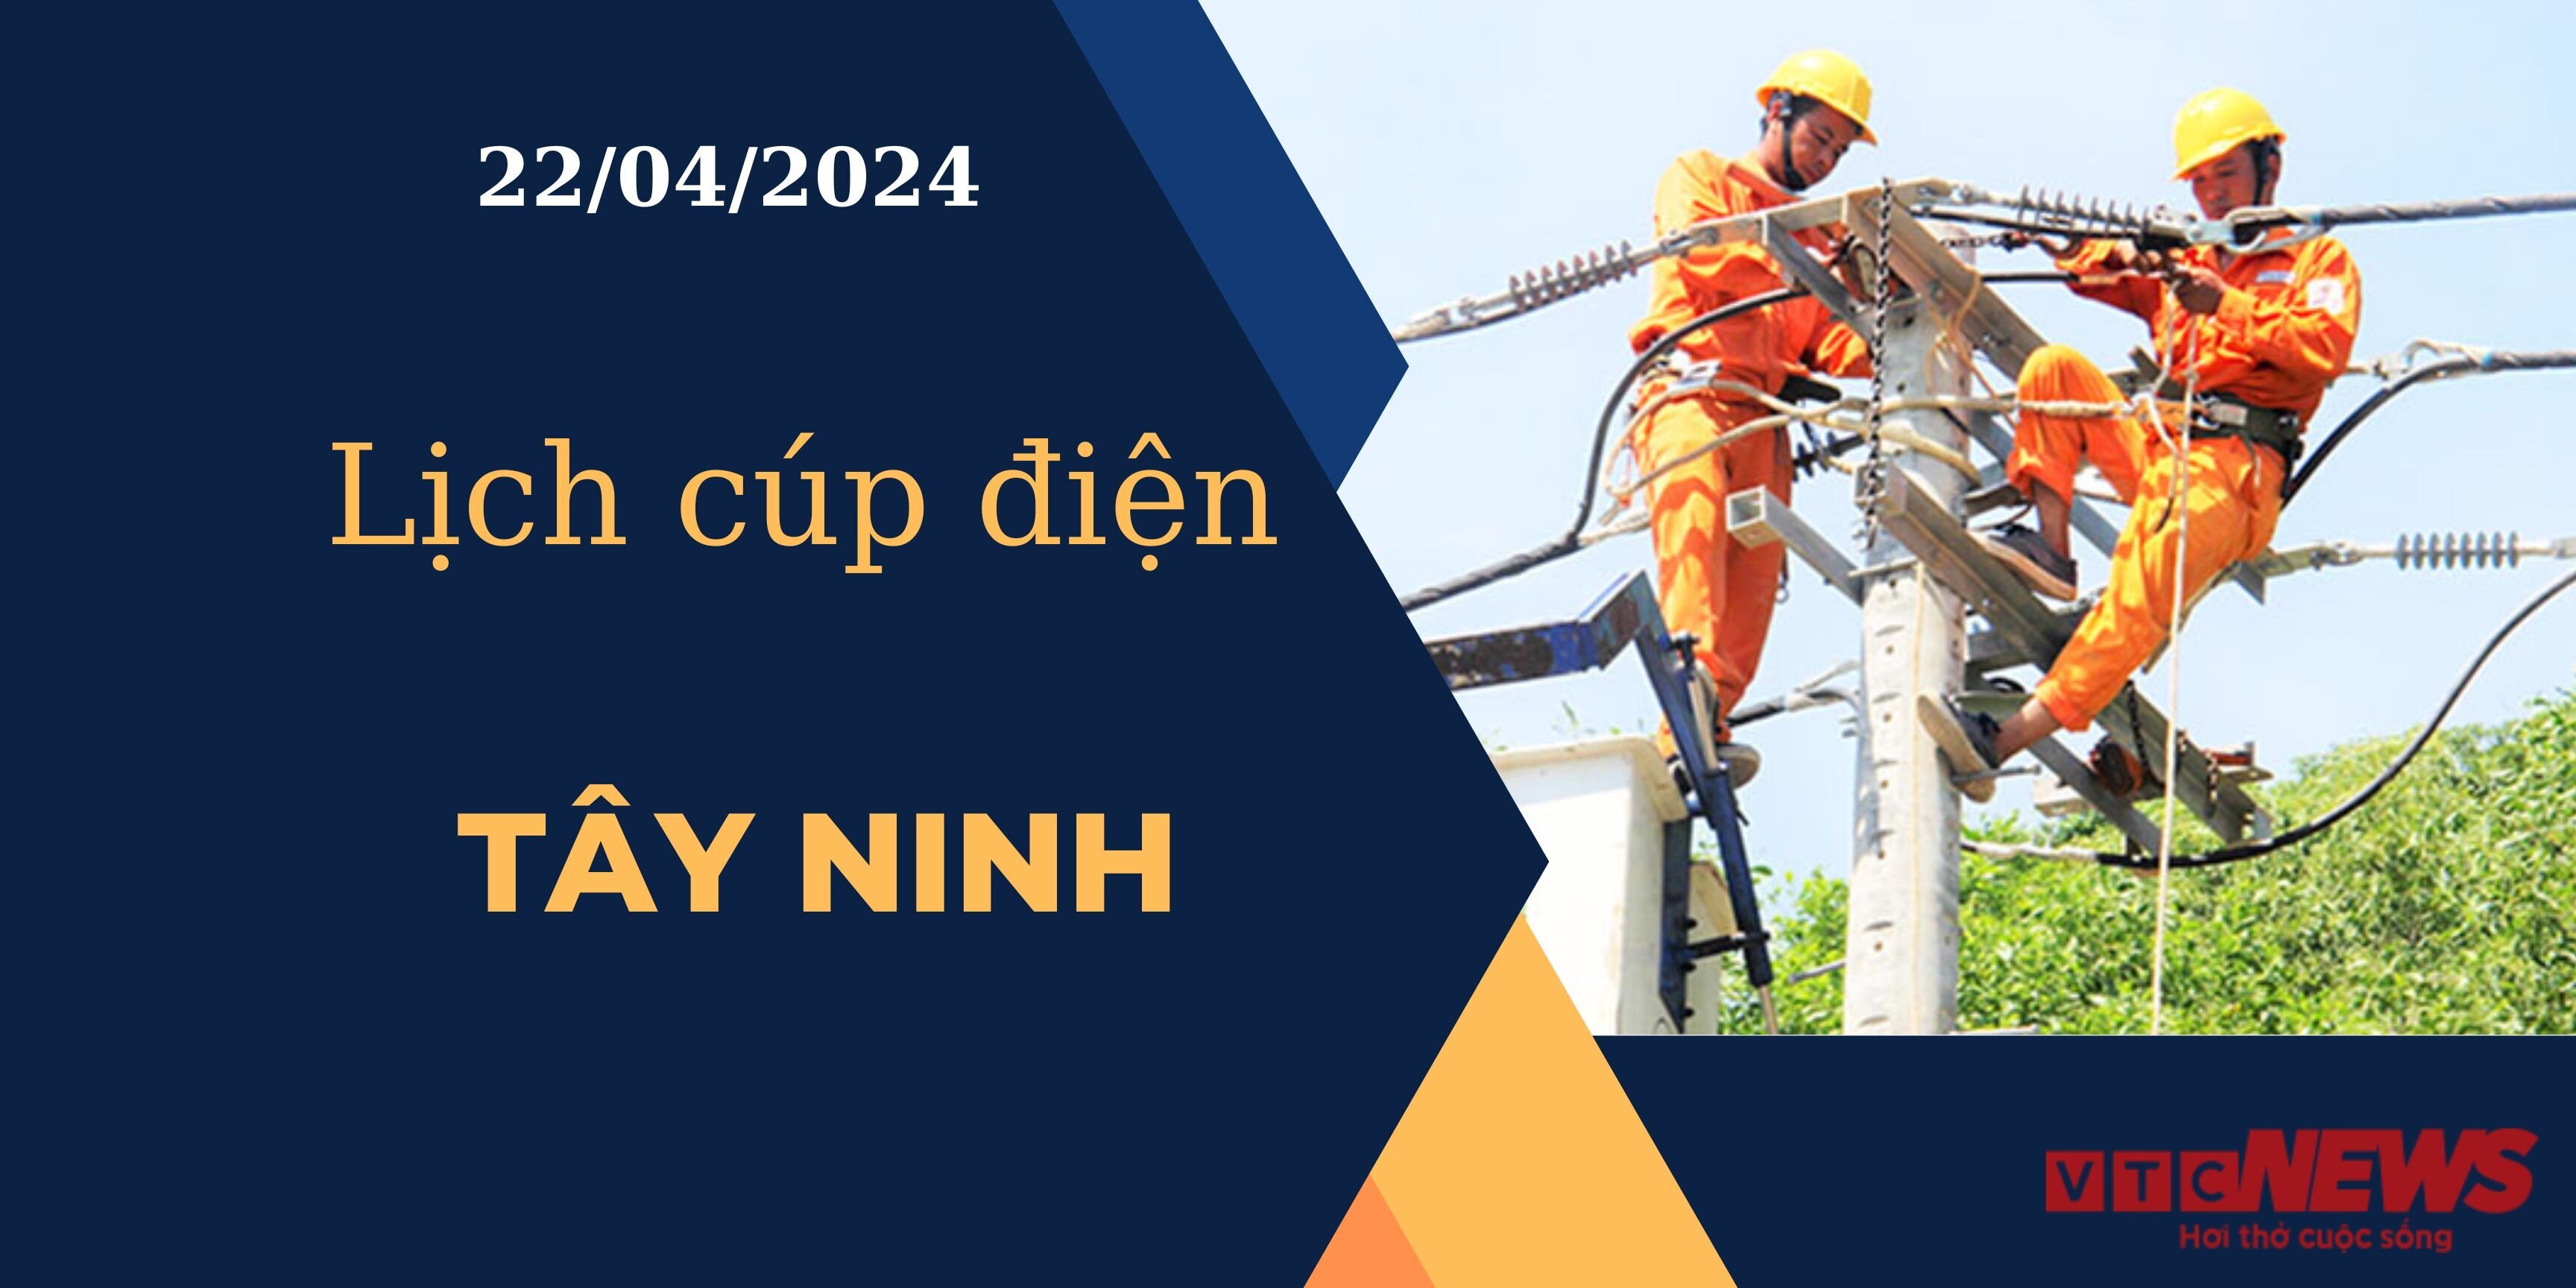 Lịch cúp điện hôm nay ngày 22/04/2024 tại Tây Ninh